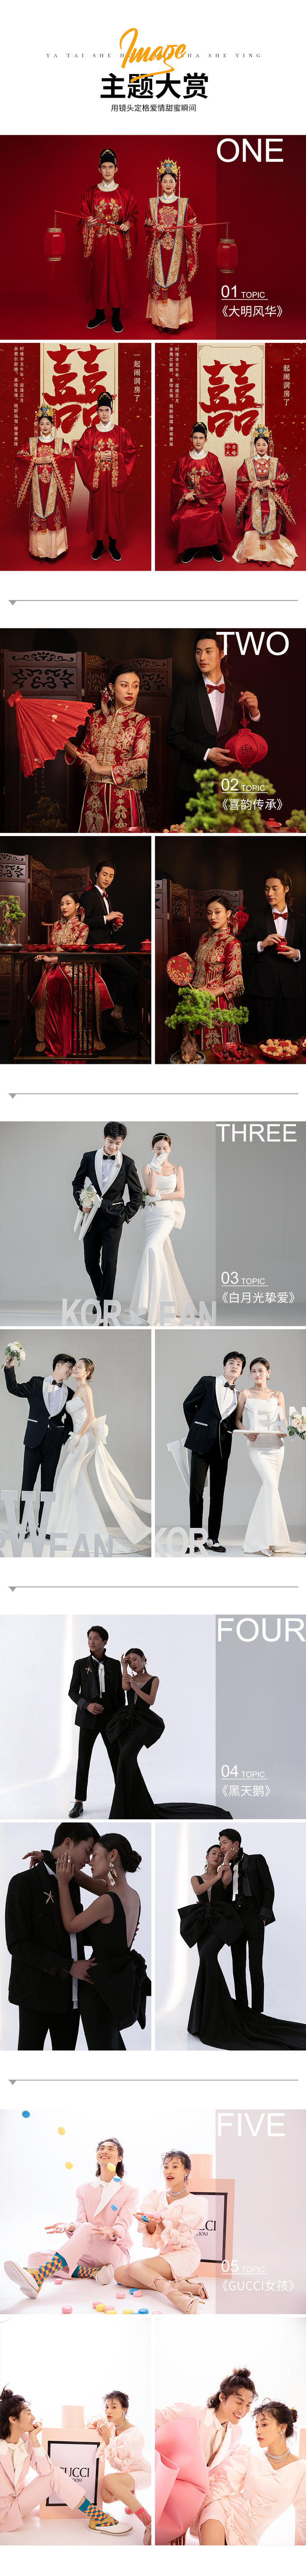 【限时特惠】城市潮拍系列|韩式婚纱照